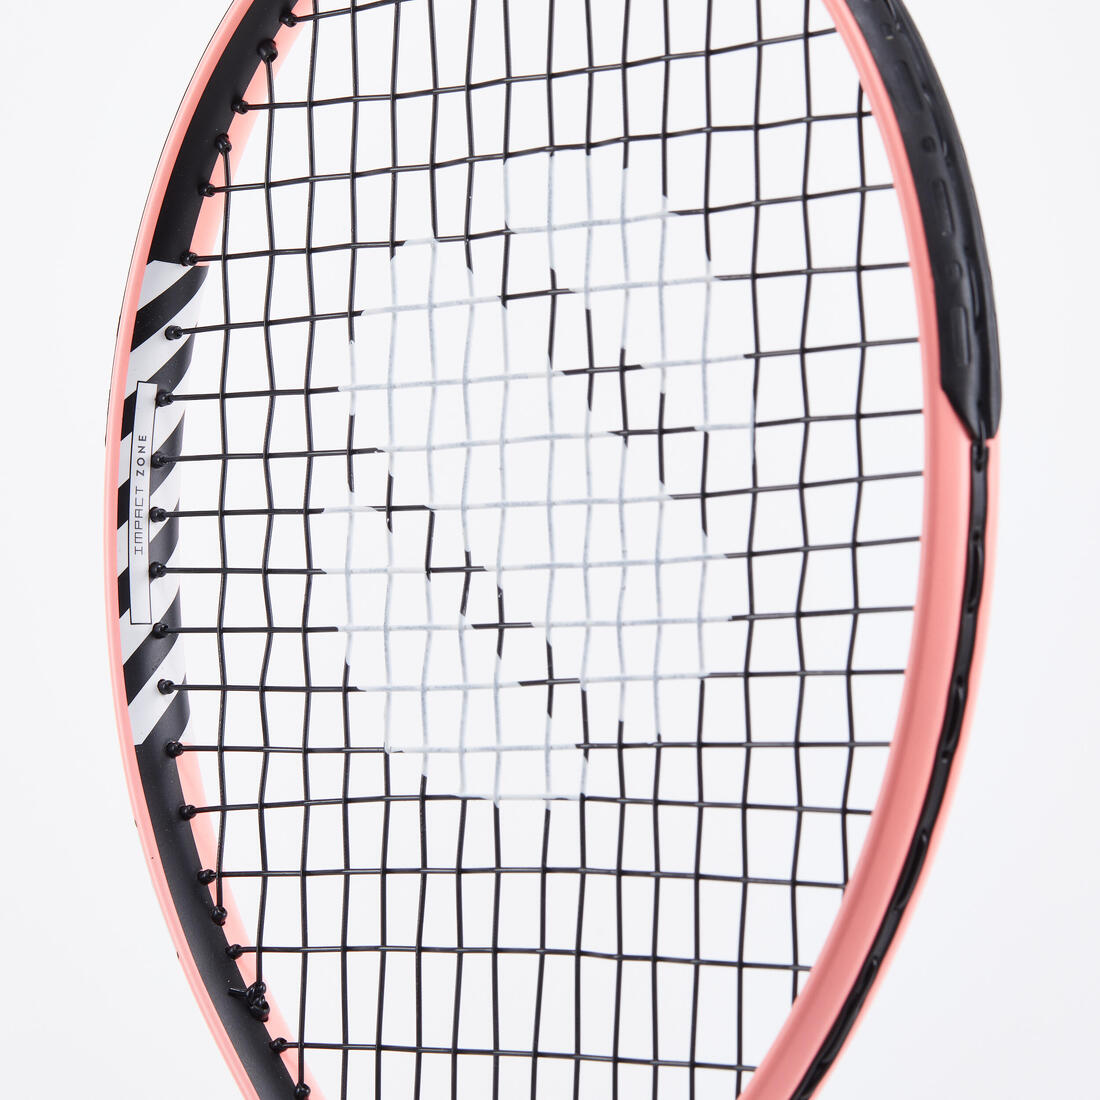 ARTENGO(アルテンゴ) テニス ラケット 21インチ 130 キッズ